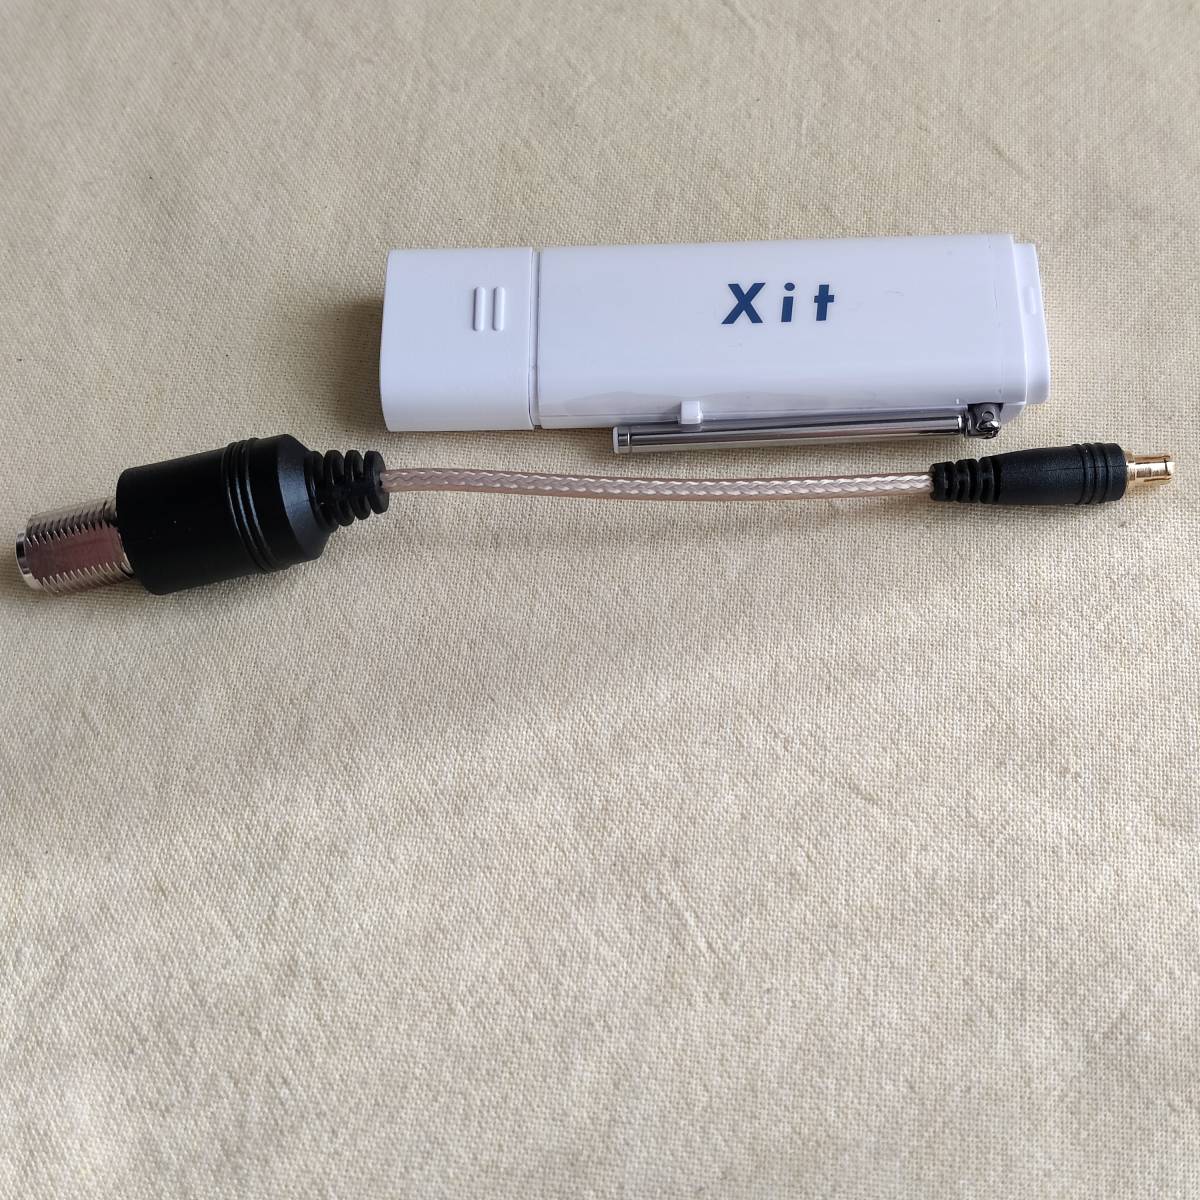 【01808A】PIXELA XIT-STK110-LM TVチューナー Windows Mac USB地デジチューナー Xit Stick _画像1